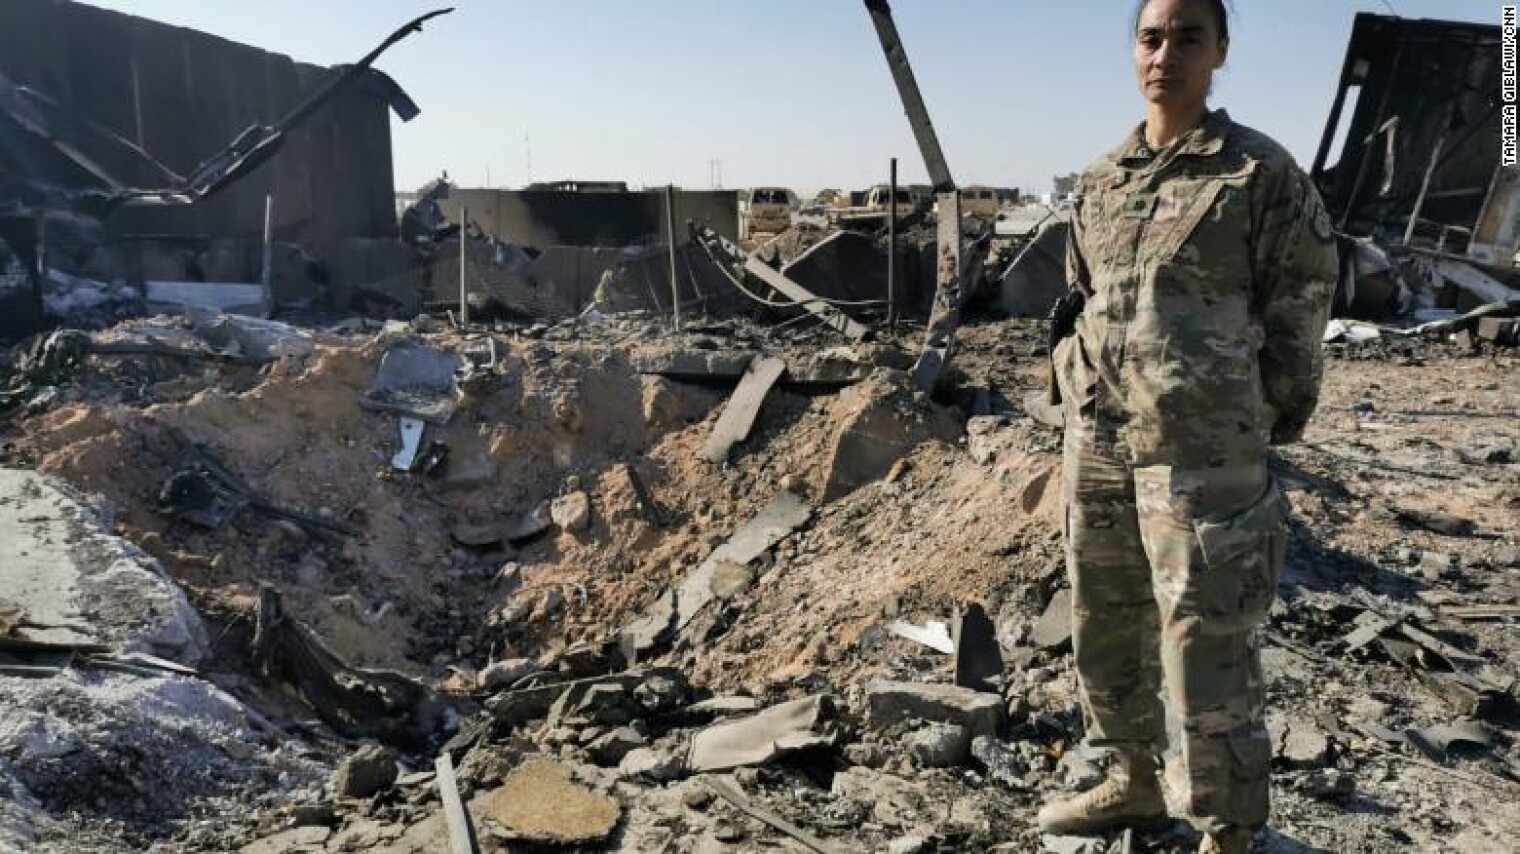 Нападение на военную базу. Ирак Эль-Каим американская Военная база. Обстрел американской базы в Ираке в 2003.